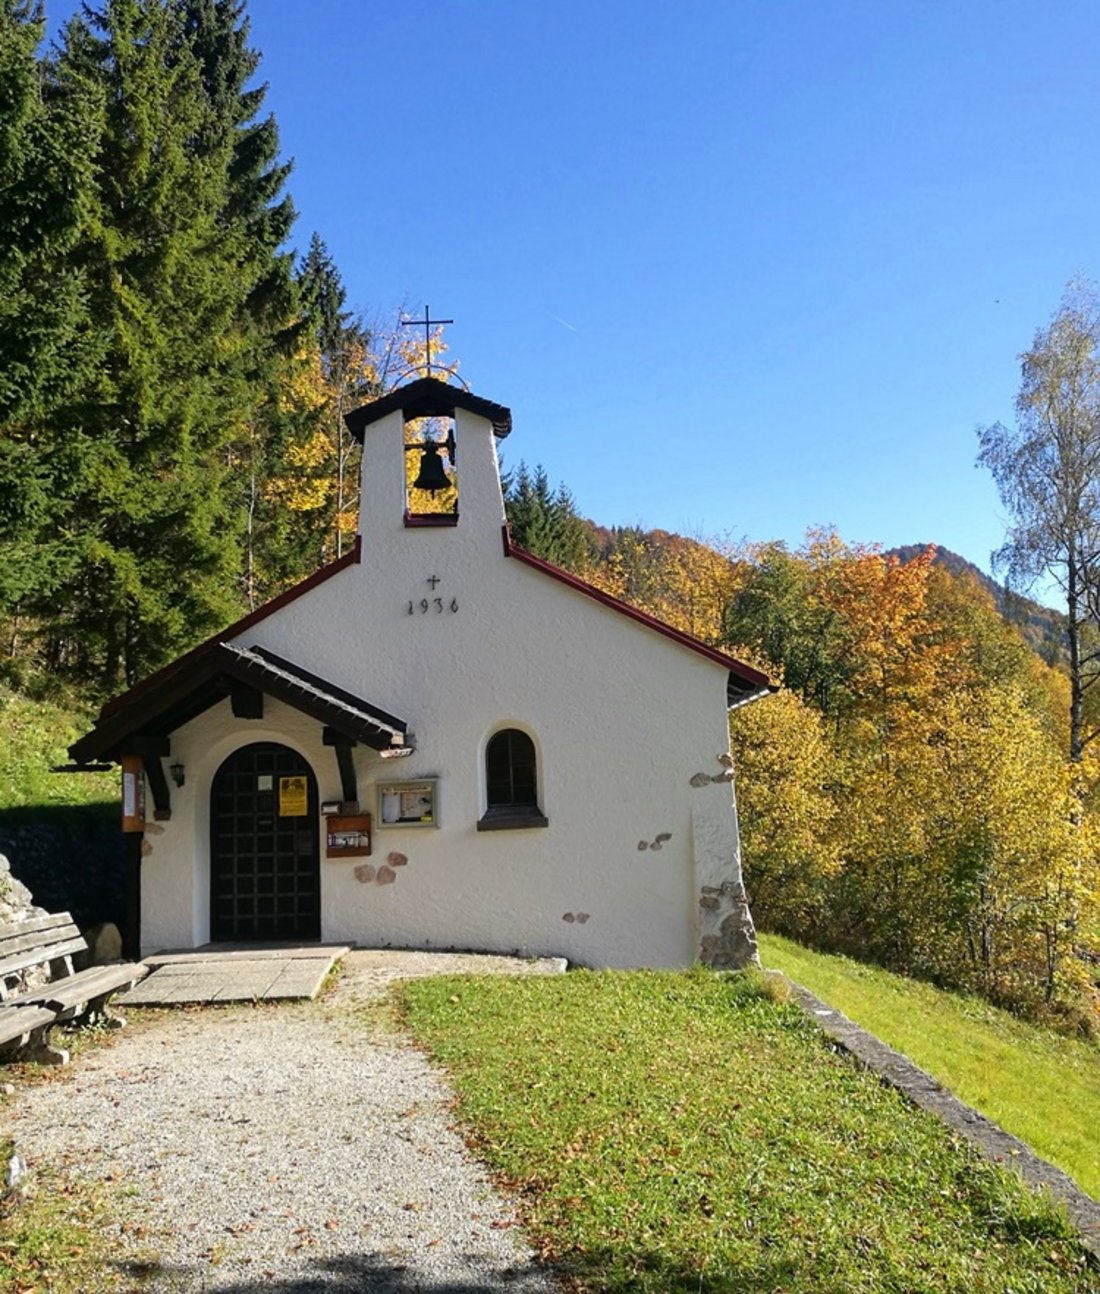 Evangelical mountain church on the Kapellensteig Premium Trail in Reit im Winkl